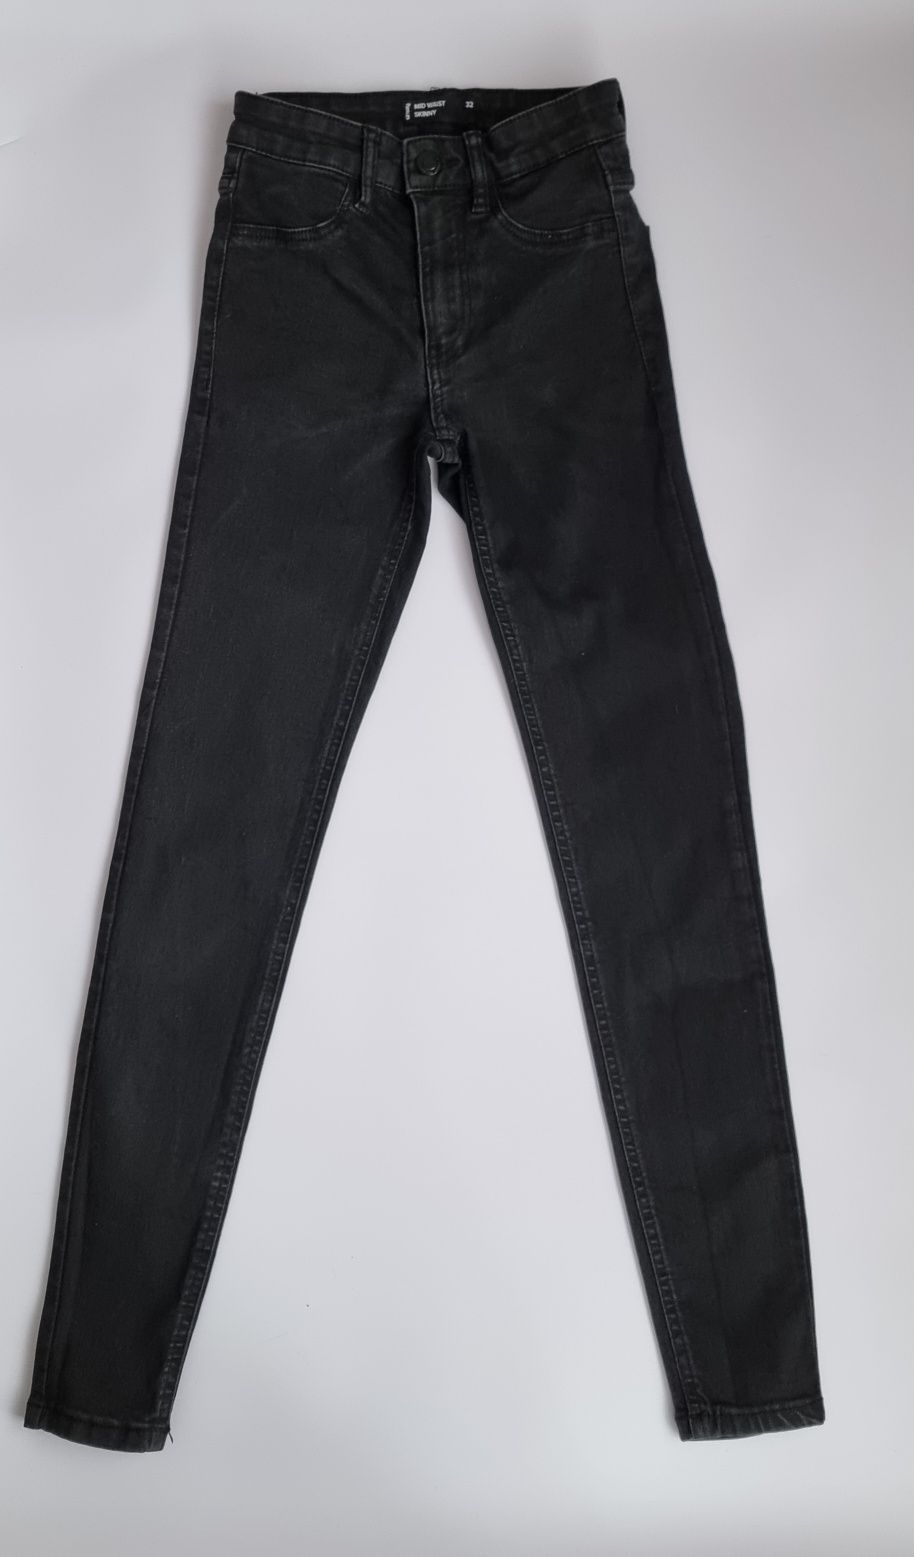 Spodnie jeansy czarne rurki dla dziewczynki rozmiar 32 Sinsay